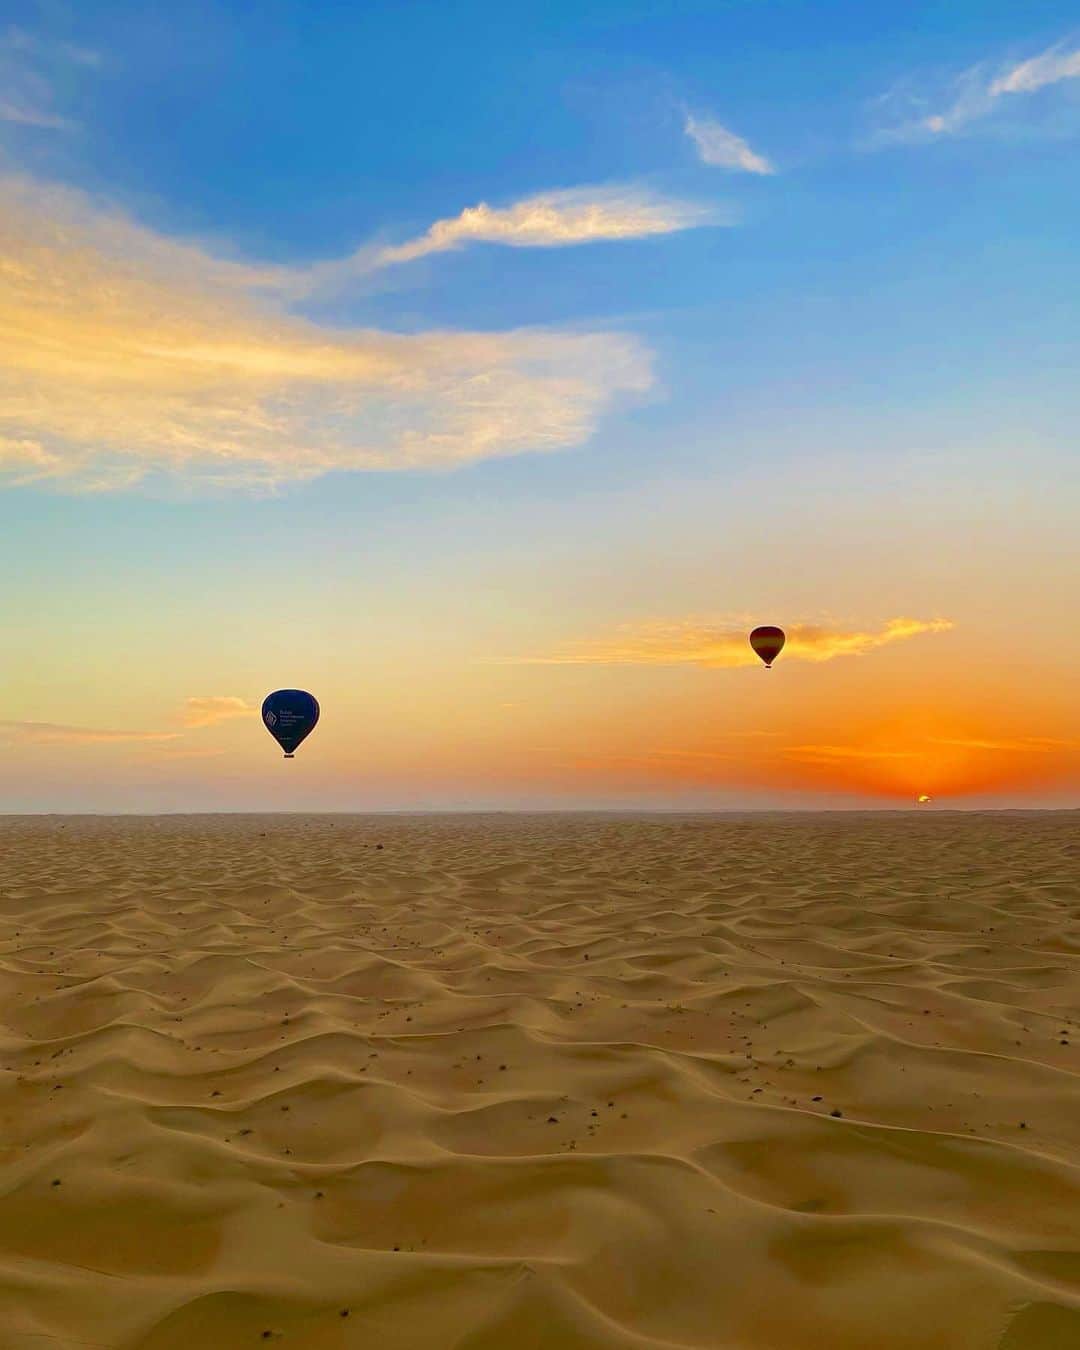 Rieのインスタグラム：「気球から見た2021年の初日の出🌞  ドバイの砂漠から上がってくる初日の出は 素晴らしく美しかったです  今年は子供達も一緒にこんなに素晴らしい体験ができて良い一年のスタートがきれました！  皆さんにもこの一年良い事が沢山起こります様に🙏❤️  コロナが収束しますように  @jwdtravel   #気球 #気球ツアー #初日の出 #balloon #balloontour #balloonadventuresdubai #ドバイ #ドバイ旅行 #ドバイ観光 #ドバイインスタ映え  #ドバイ生活  #ドバイグラム  #ドバイ在住 #海外暮らし #海外旅行 #海外旅行好きな人と繋がりたい  #タビジョ #ビジットドバイ  #middleeast  #dubai #dubaitrip #dubaigram  #dubailife #dubaiinstagram  #mydubai #visitdubai」